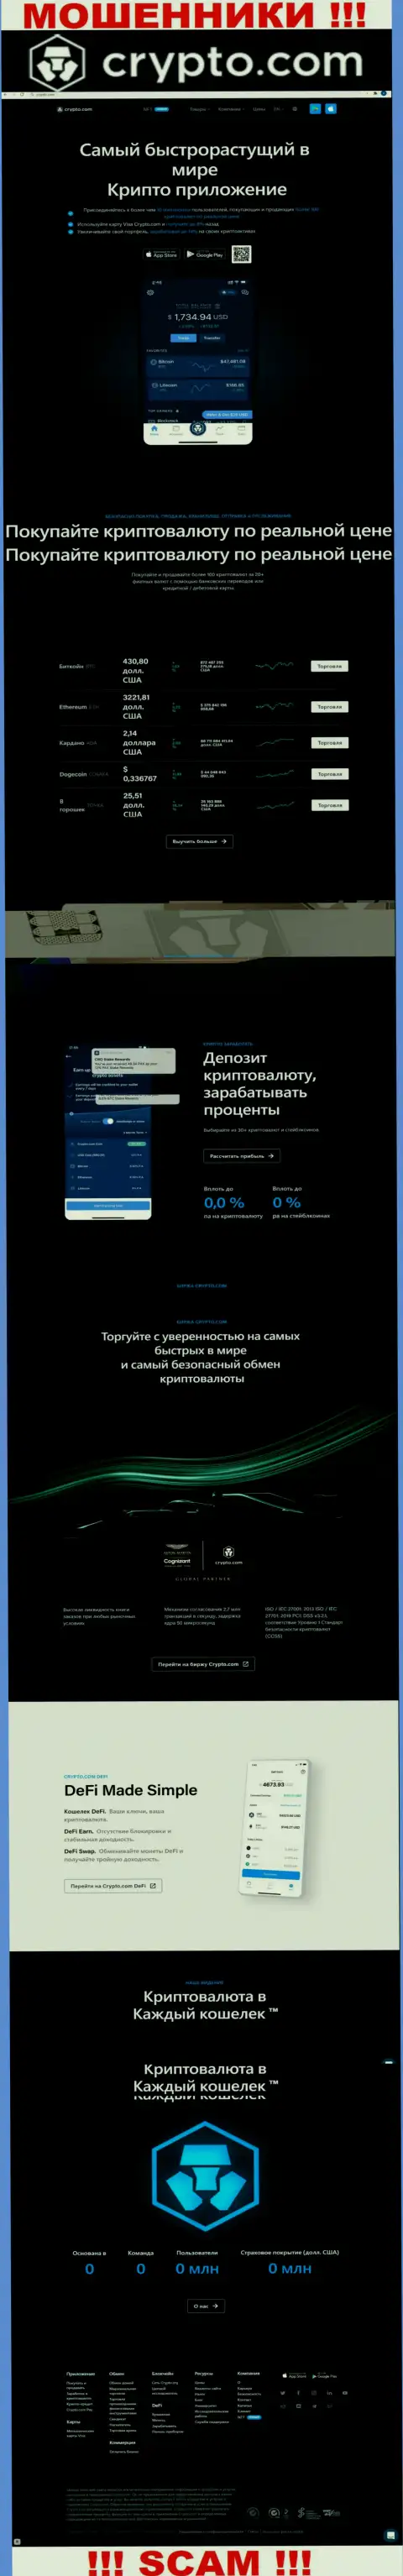 Официальный сайт шулеров Крипто Ком, забитый сведениями для лохов